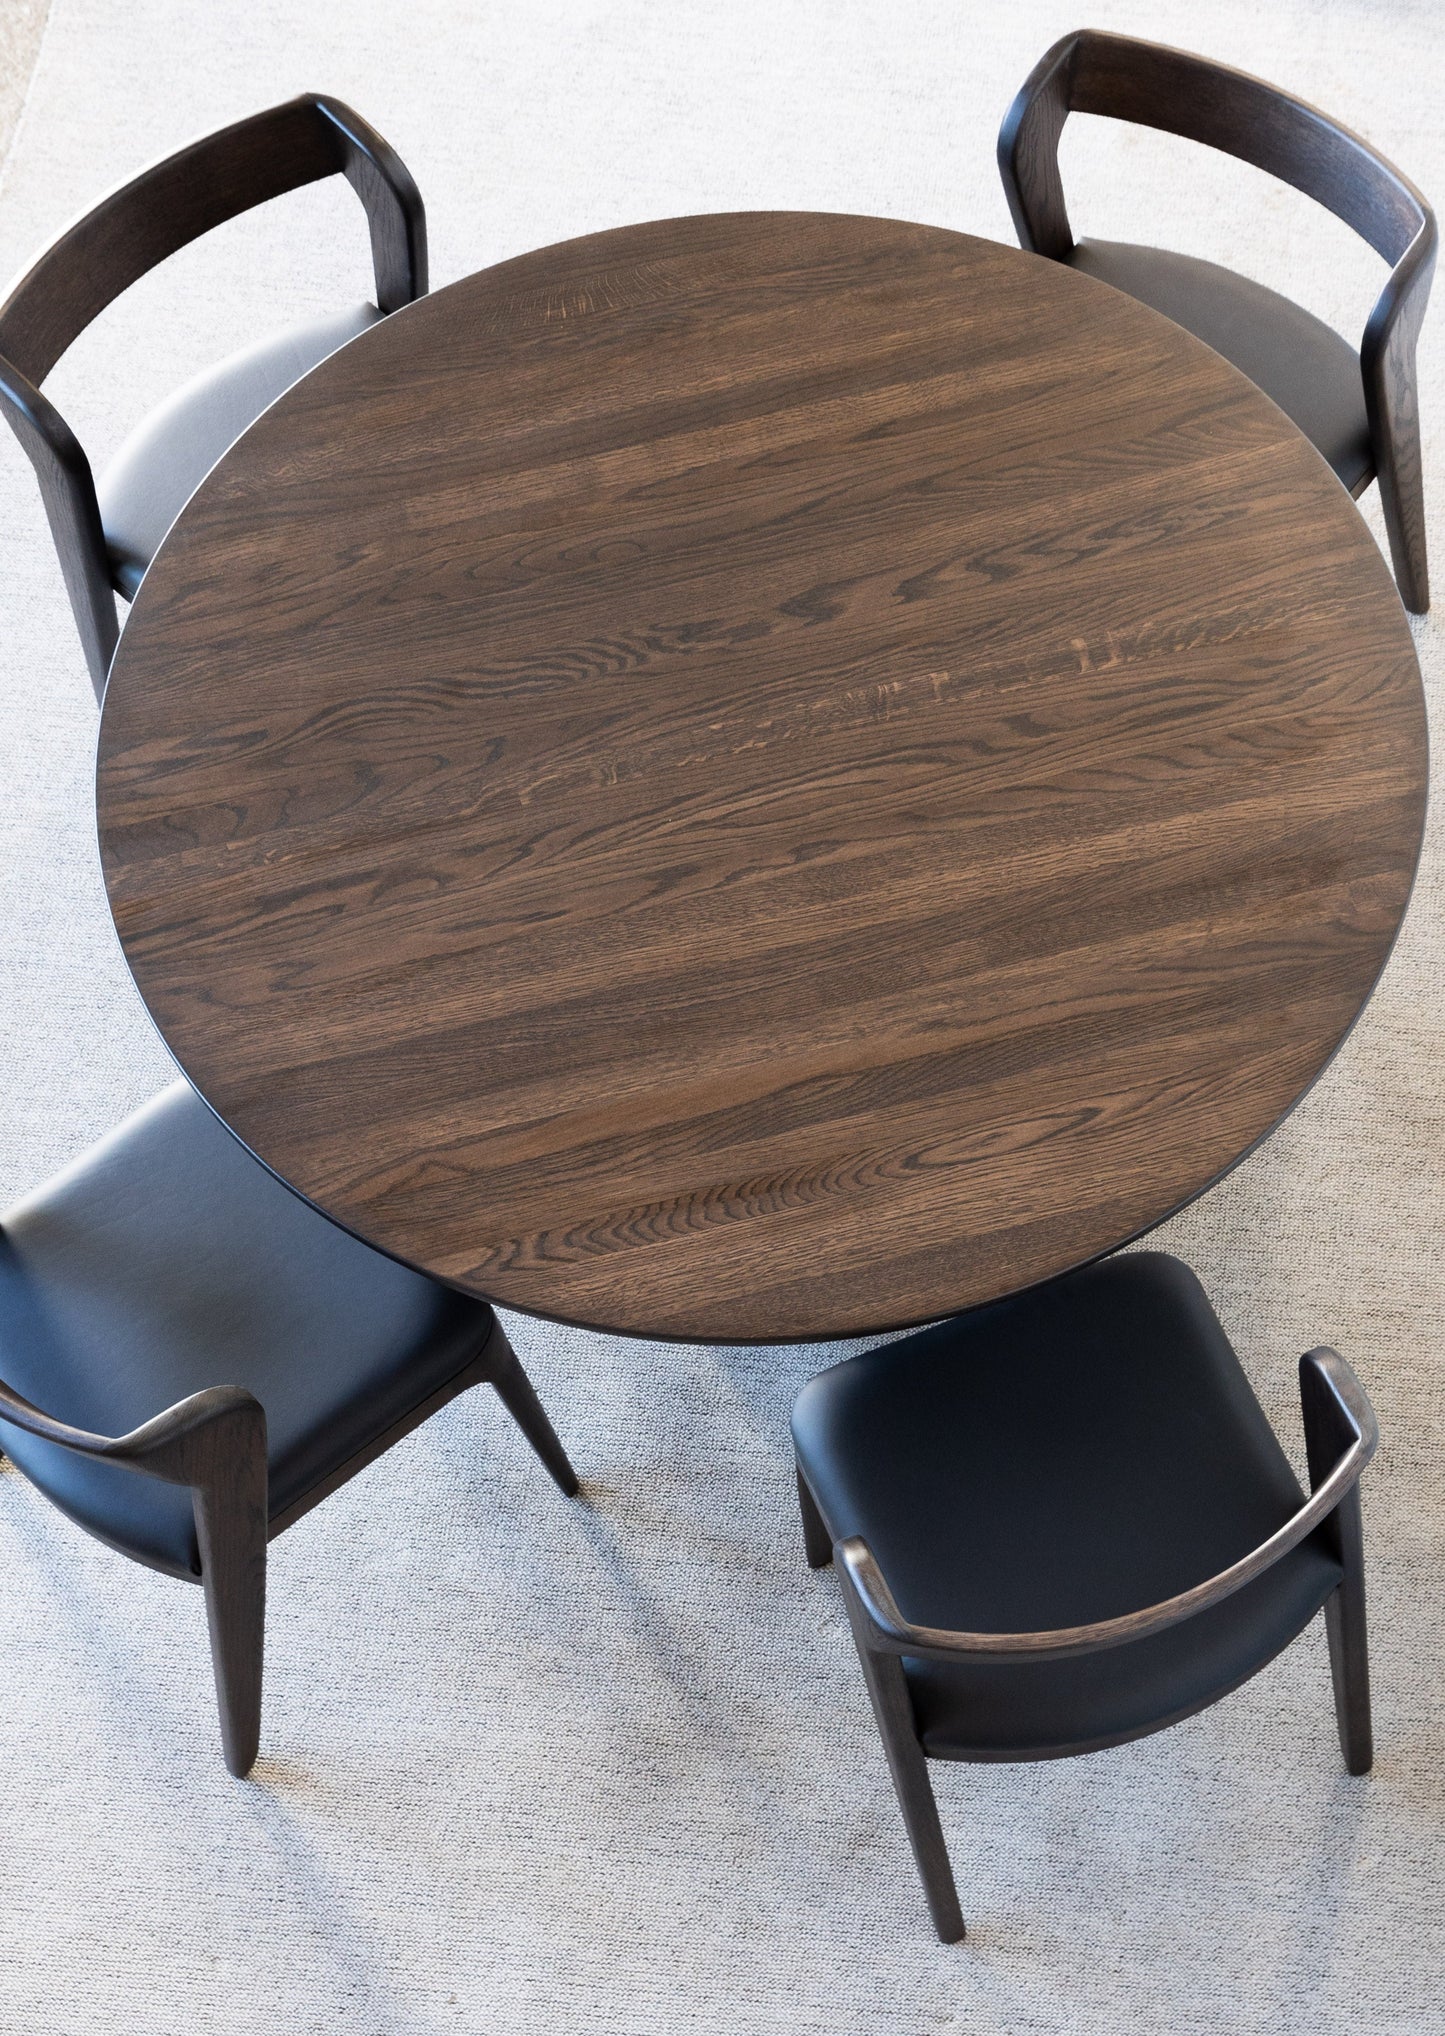 Spisegruppen Lervik består av ett rundt spisebord (Lofoten) og seks stoler (Vera). Spisebordet Lofoten ble inspirert av den vakre naturen i Lofoten. Den slanke, runde bordplaten ser visuelt lett og elegant ut. Mens bordets sokkel er det motsatte til bordplaten - den er massiv og kraftig. 